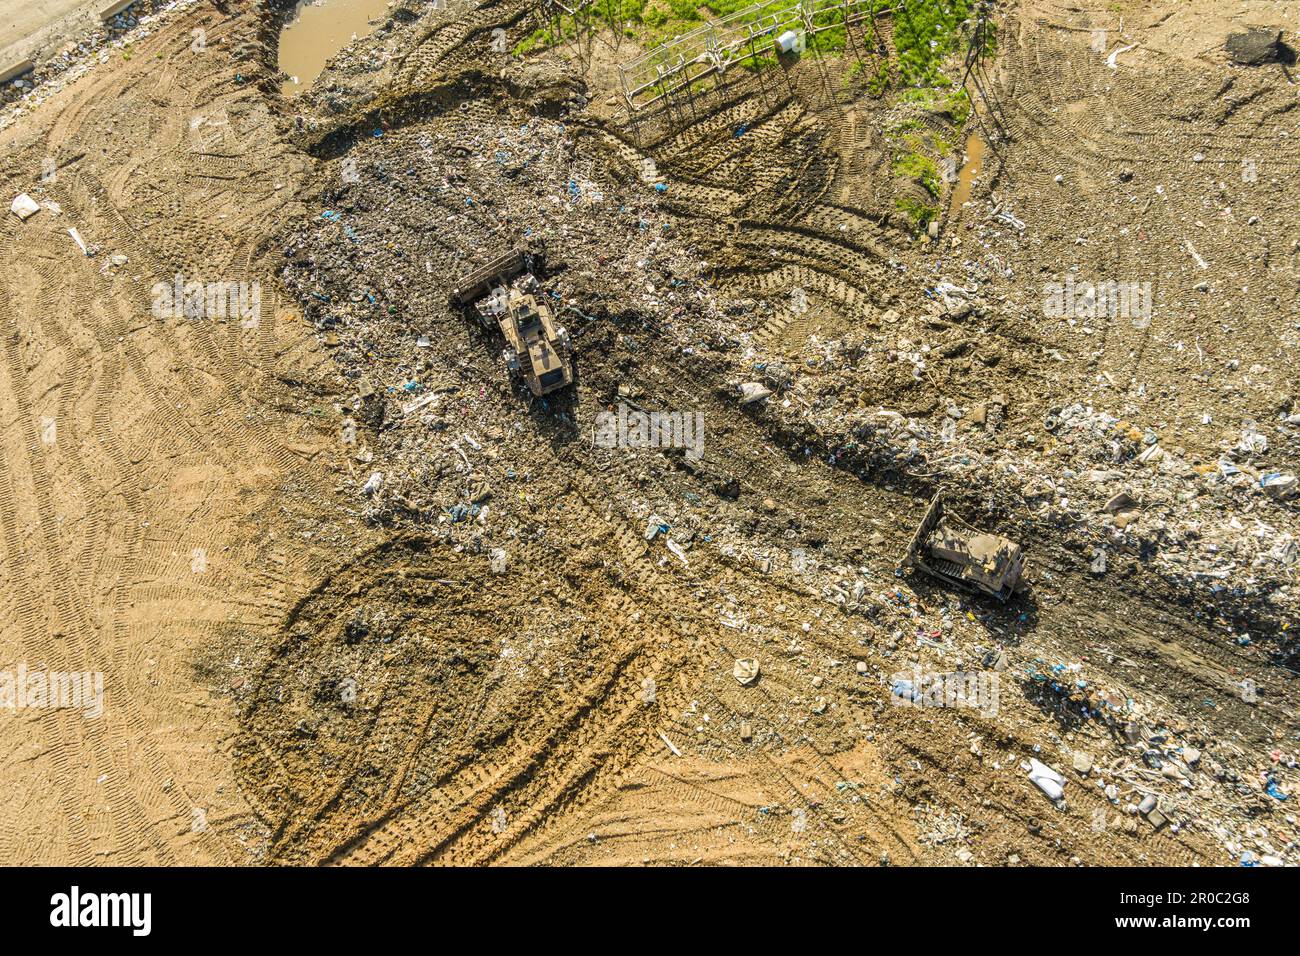 Vista aérea del sitio de residuos municipales, Pensilvania, EE.UU Foto de stock